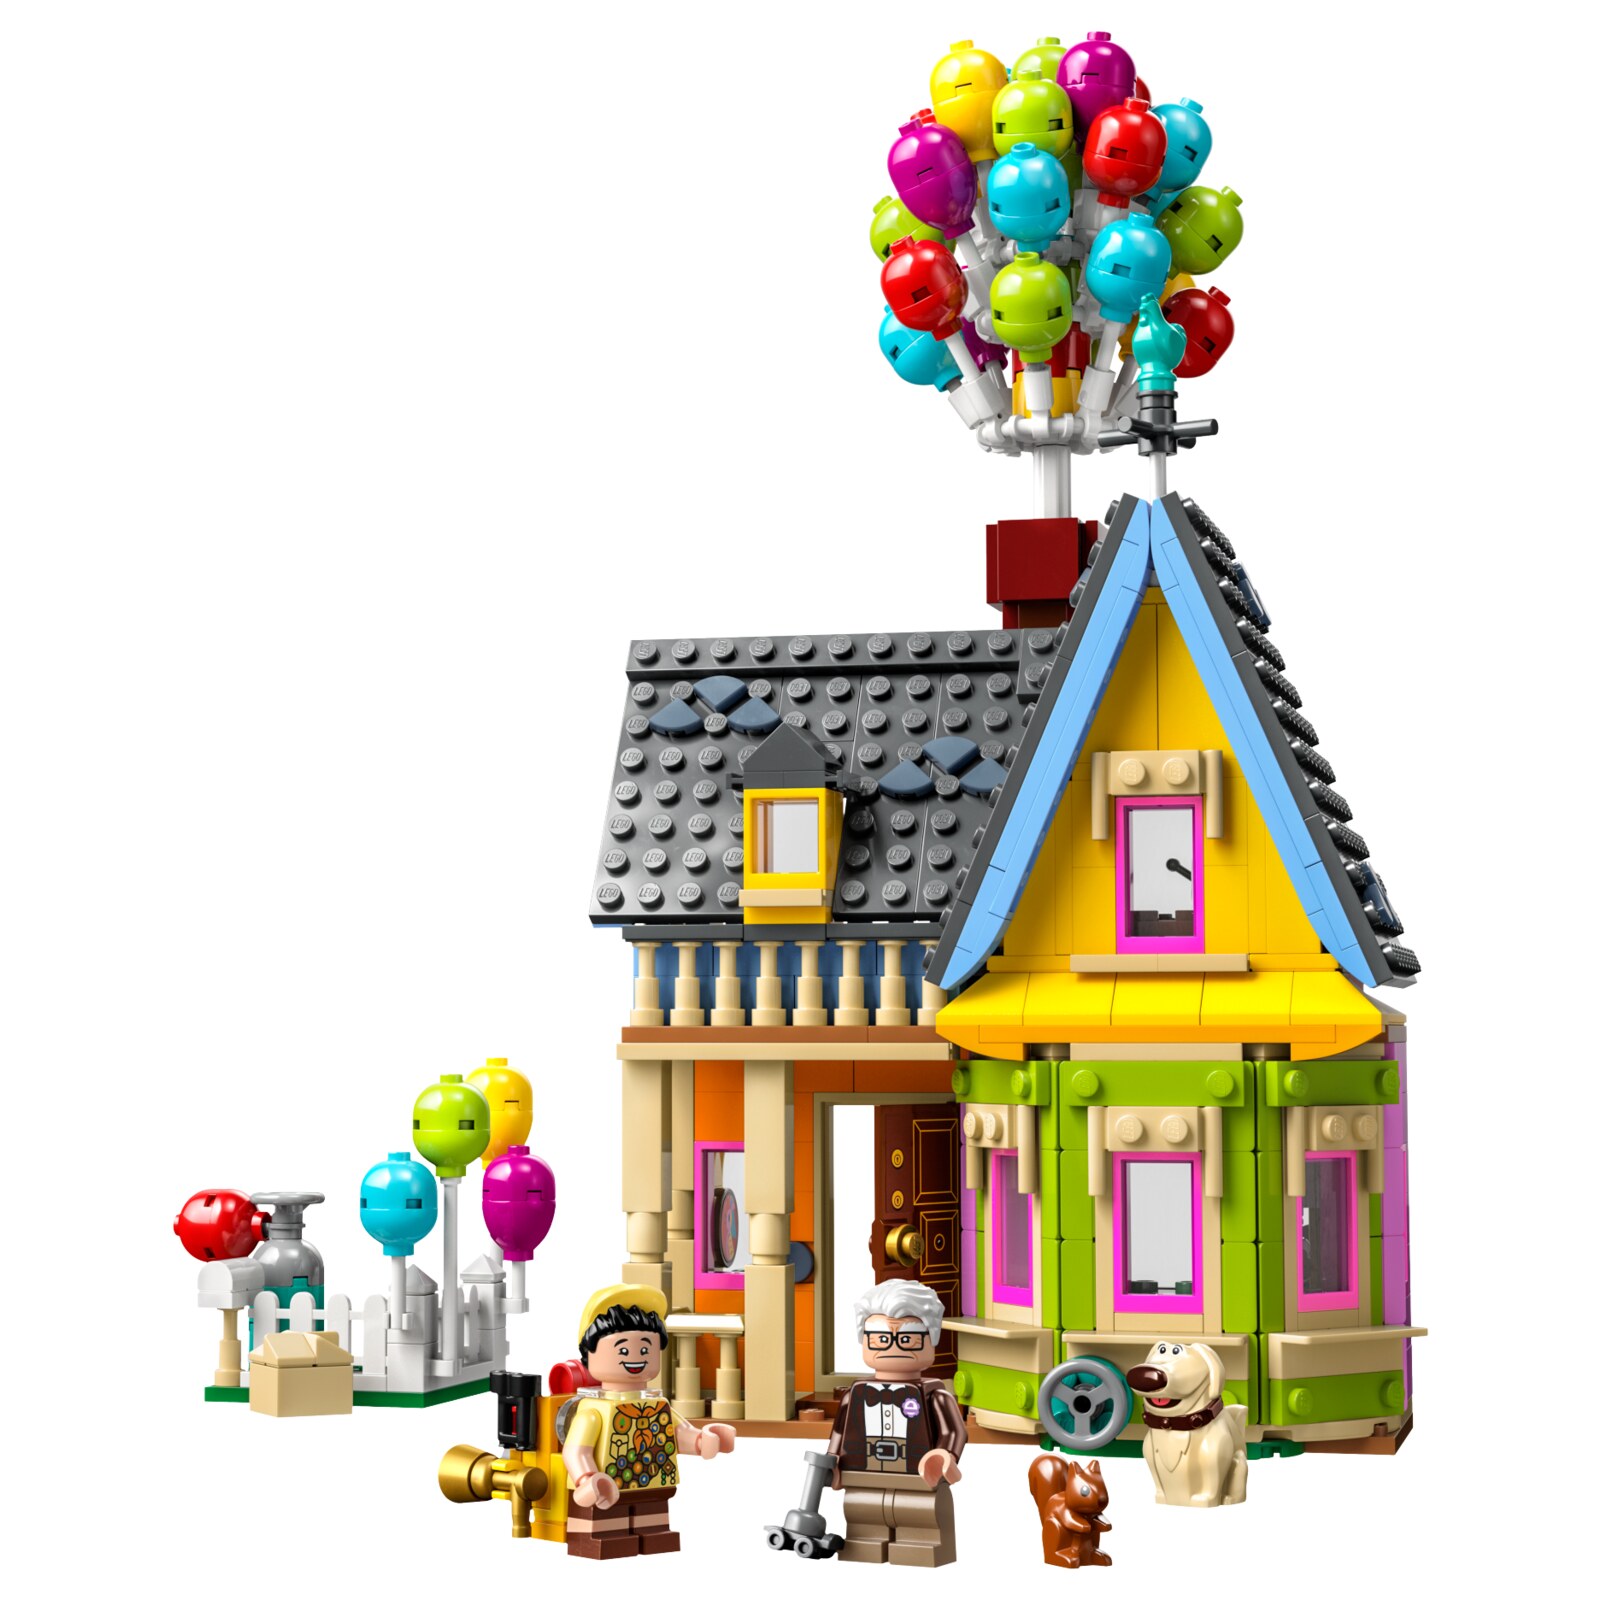 Конструктор LEGO Disney Дом из мультфильма Вверх, 598 деталей, 43217 реаниматор культового кино